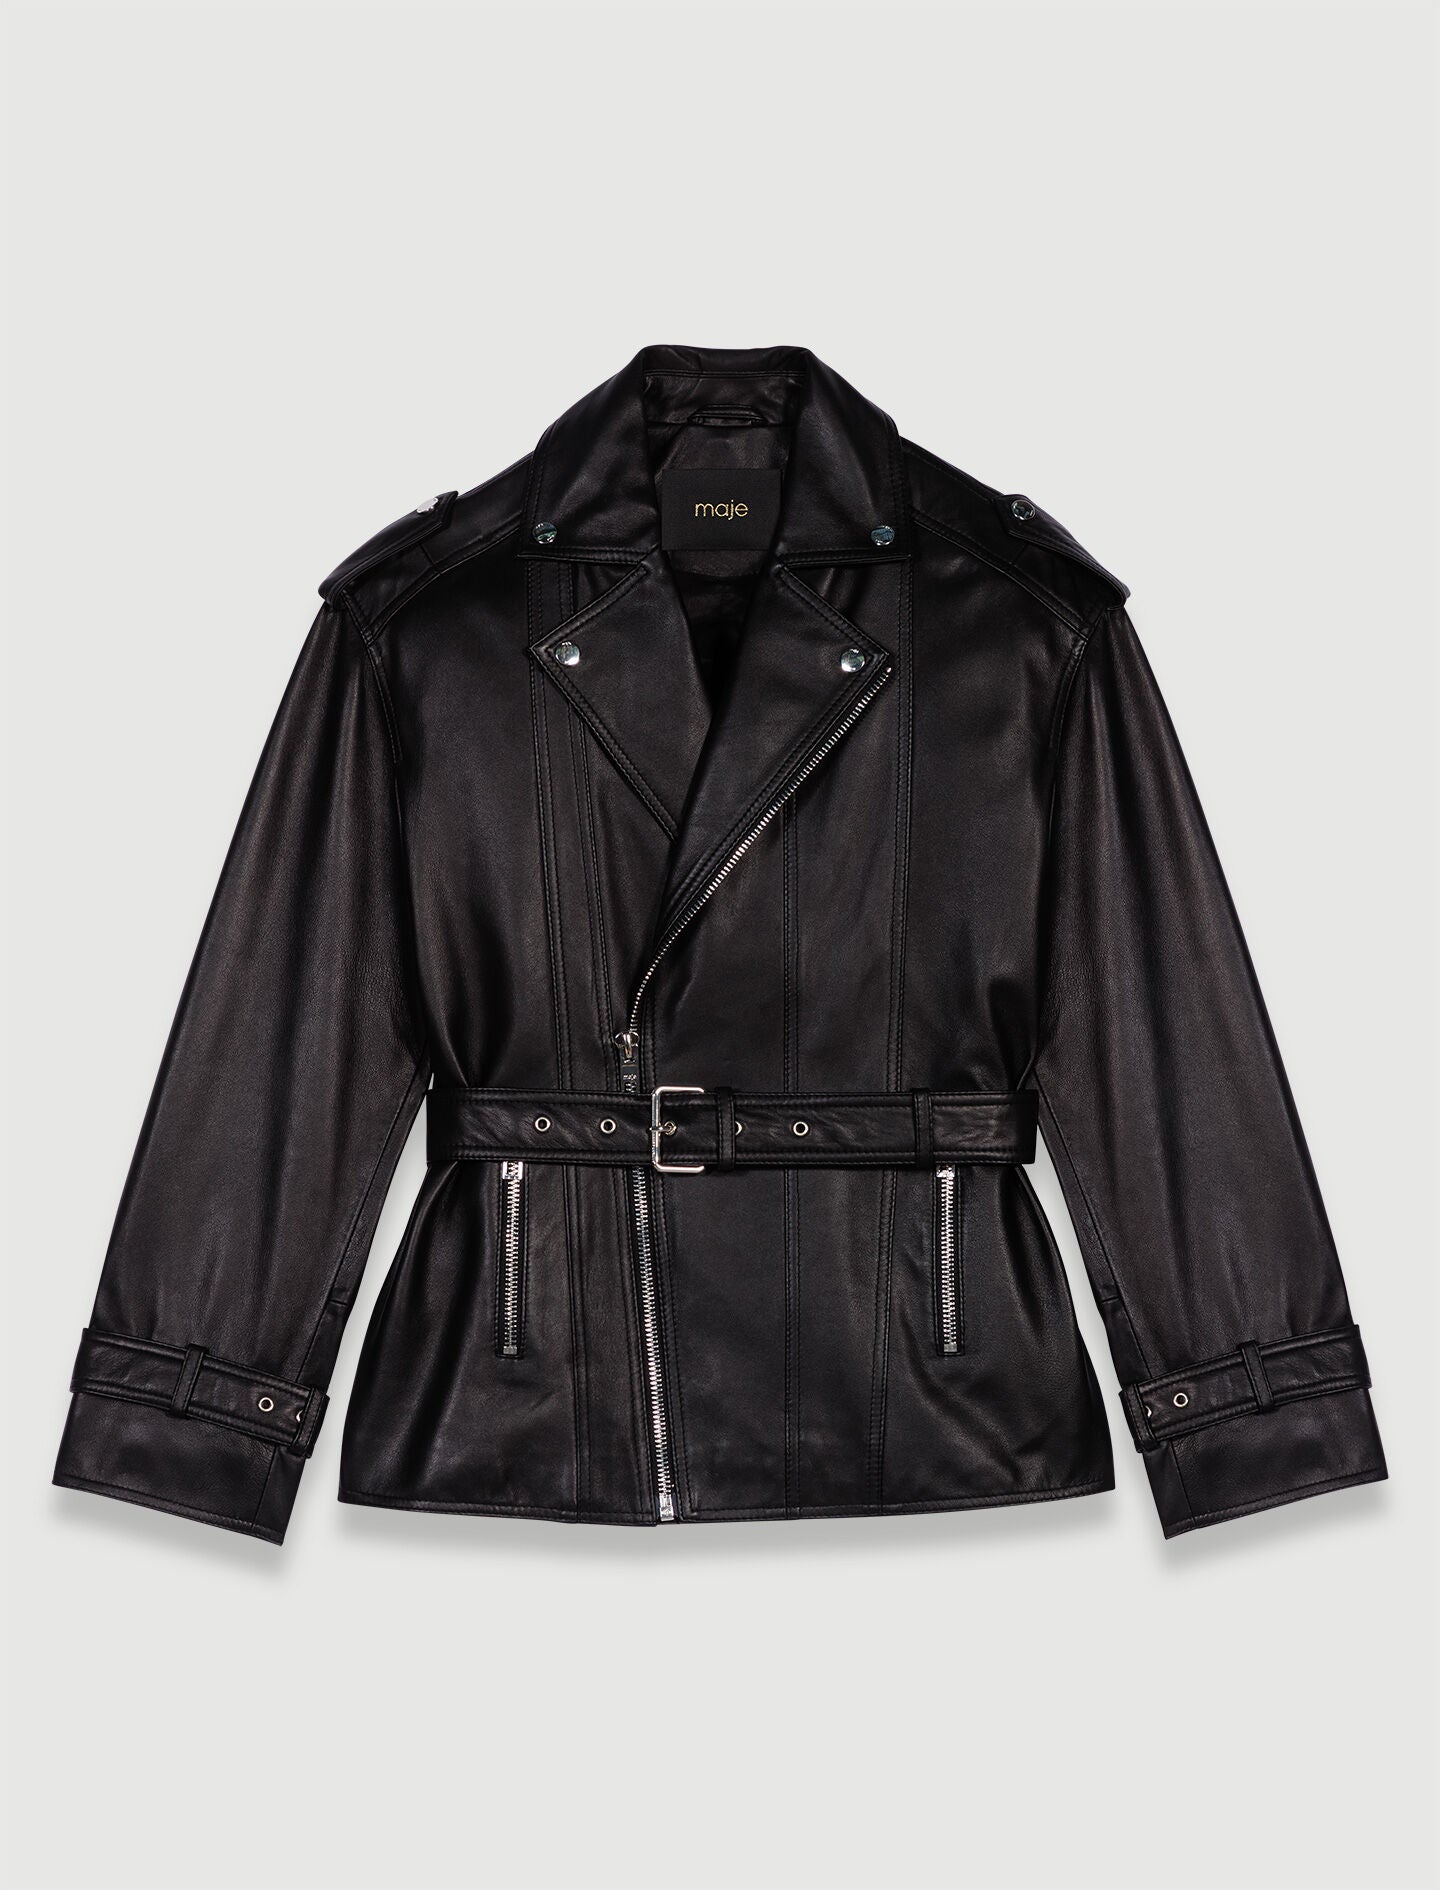 Black-leather jacket